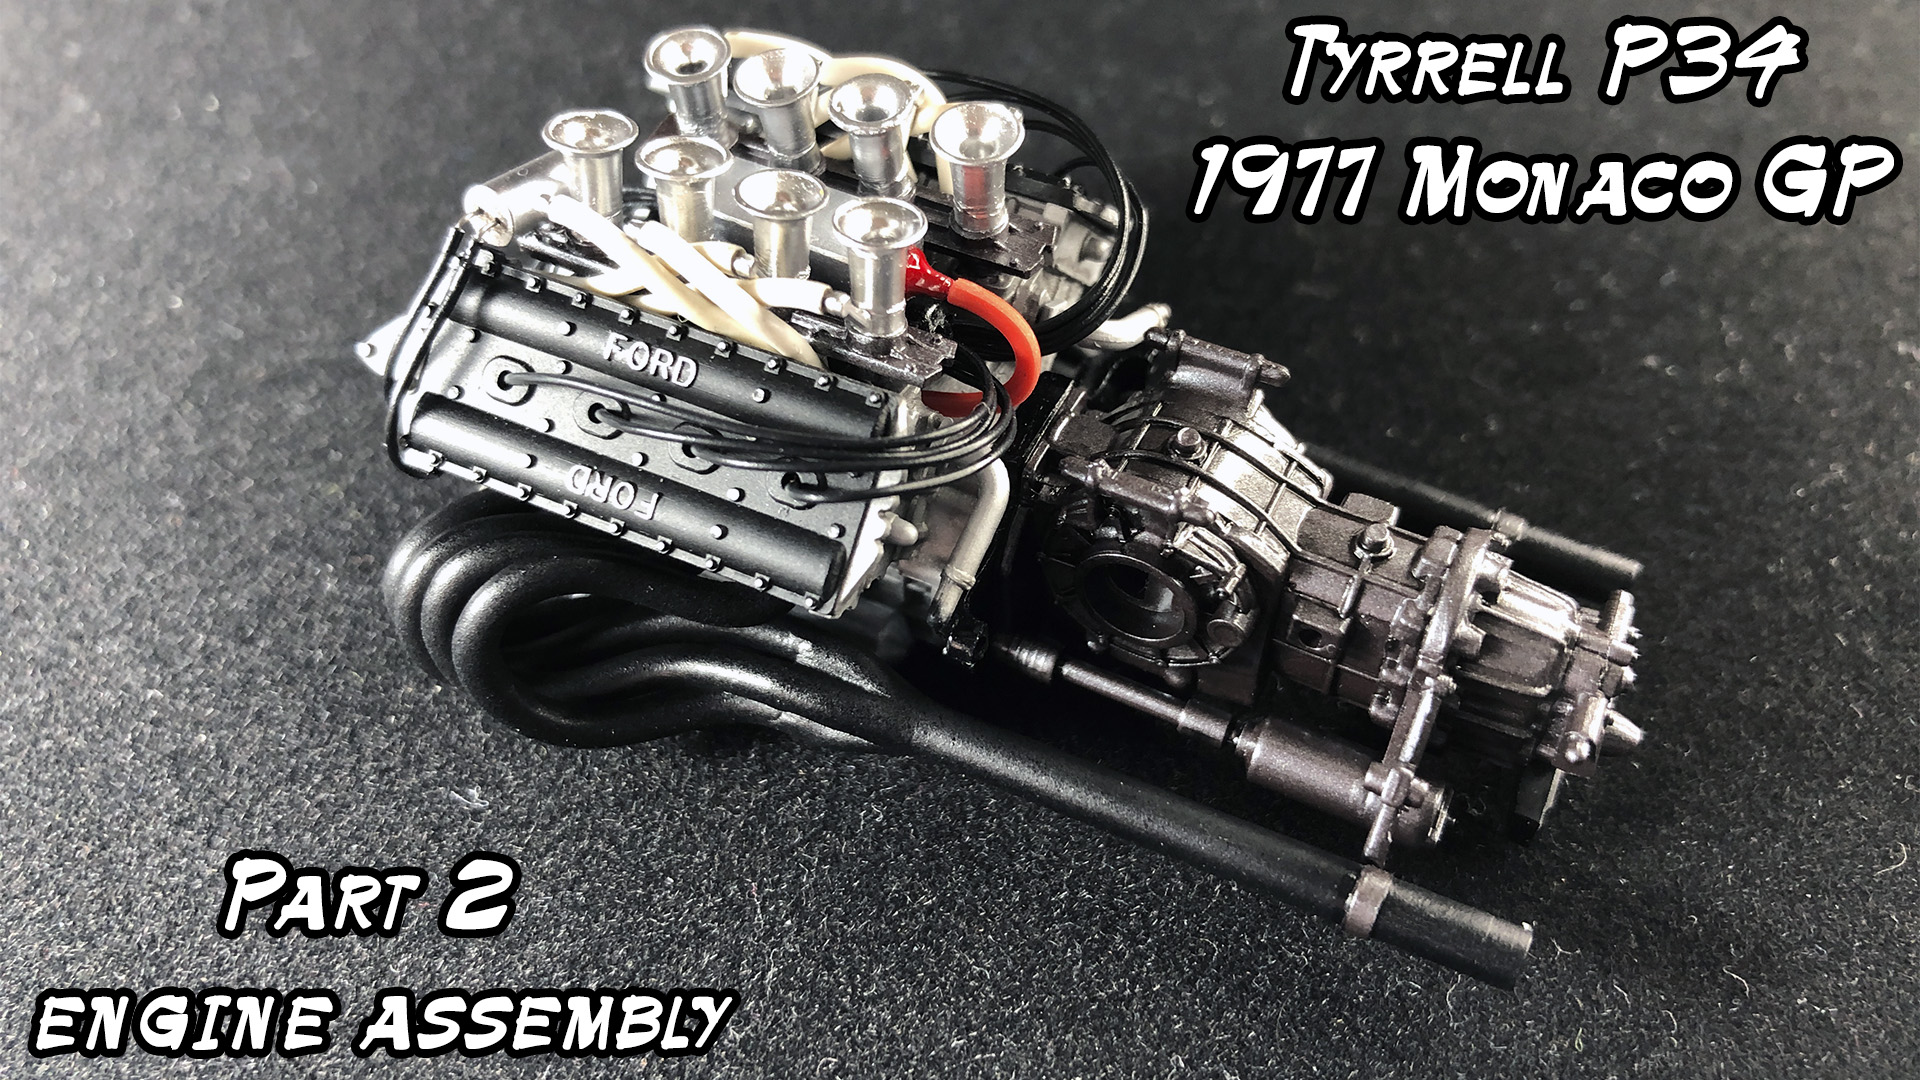 Сборка Tyrrell p34 1/20 часть 2